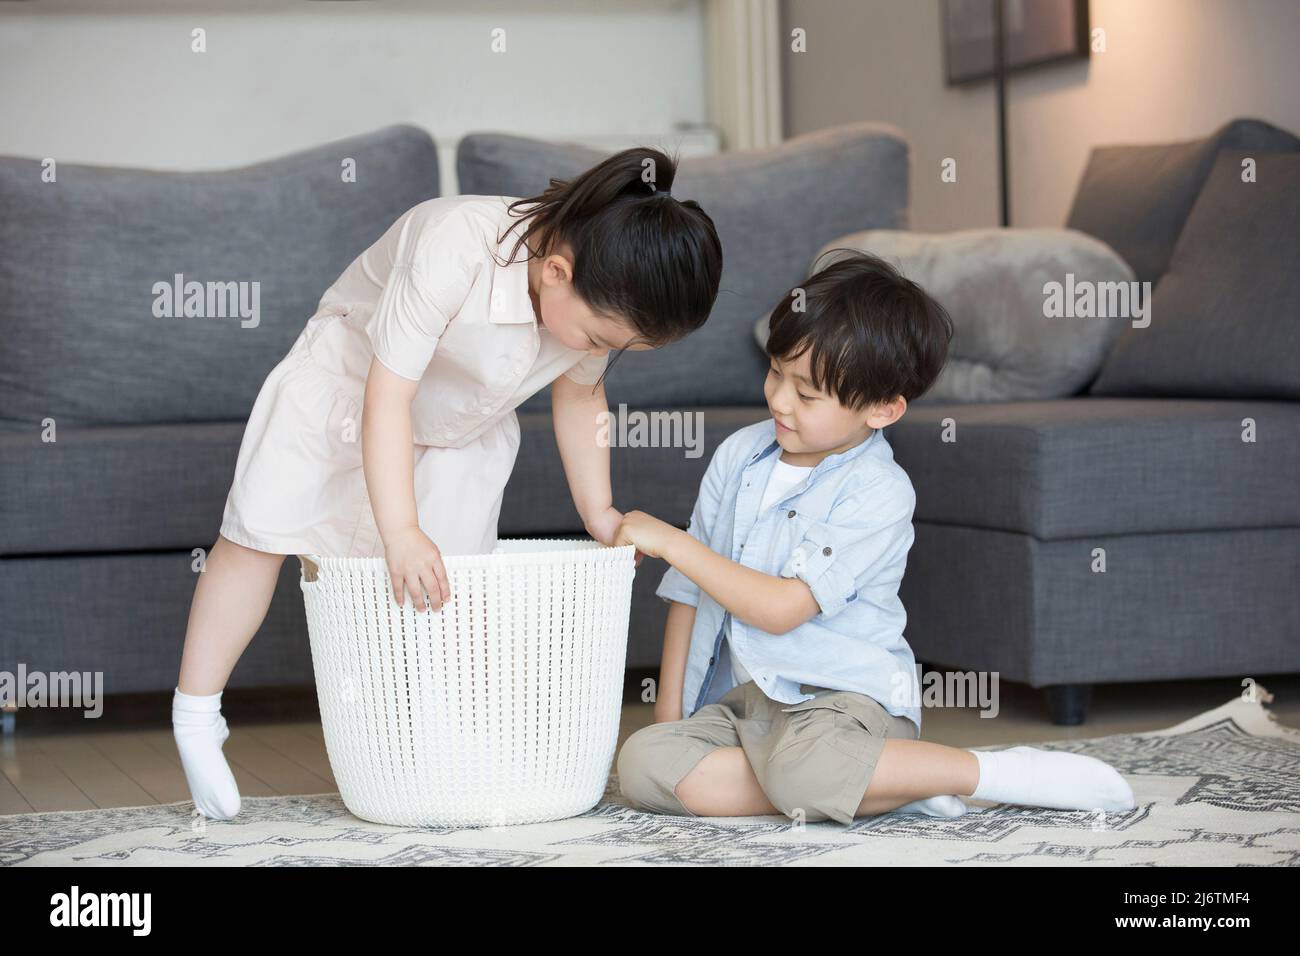 Dal divano del soggiorno, una bambina è pronta a sedersi nel cesto di vestiti e il ragazzino la sta aiutando - foto di scorta Foto Stock